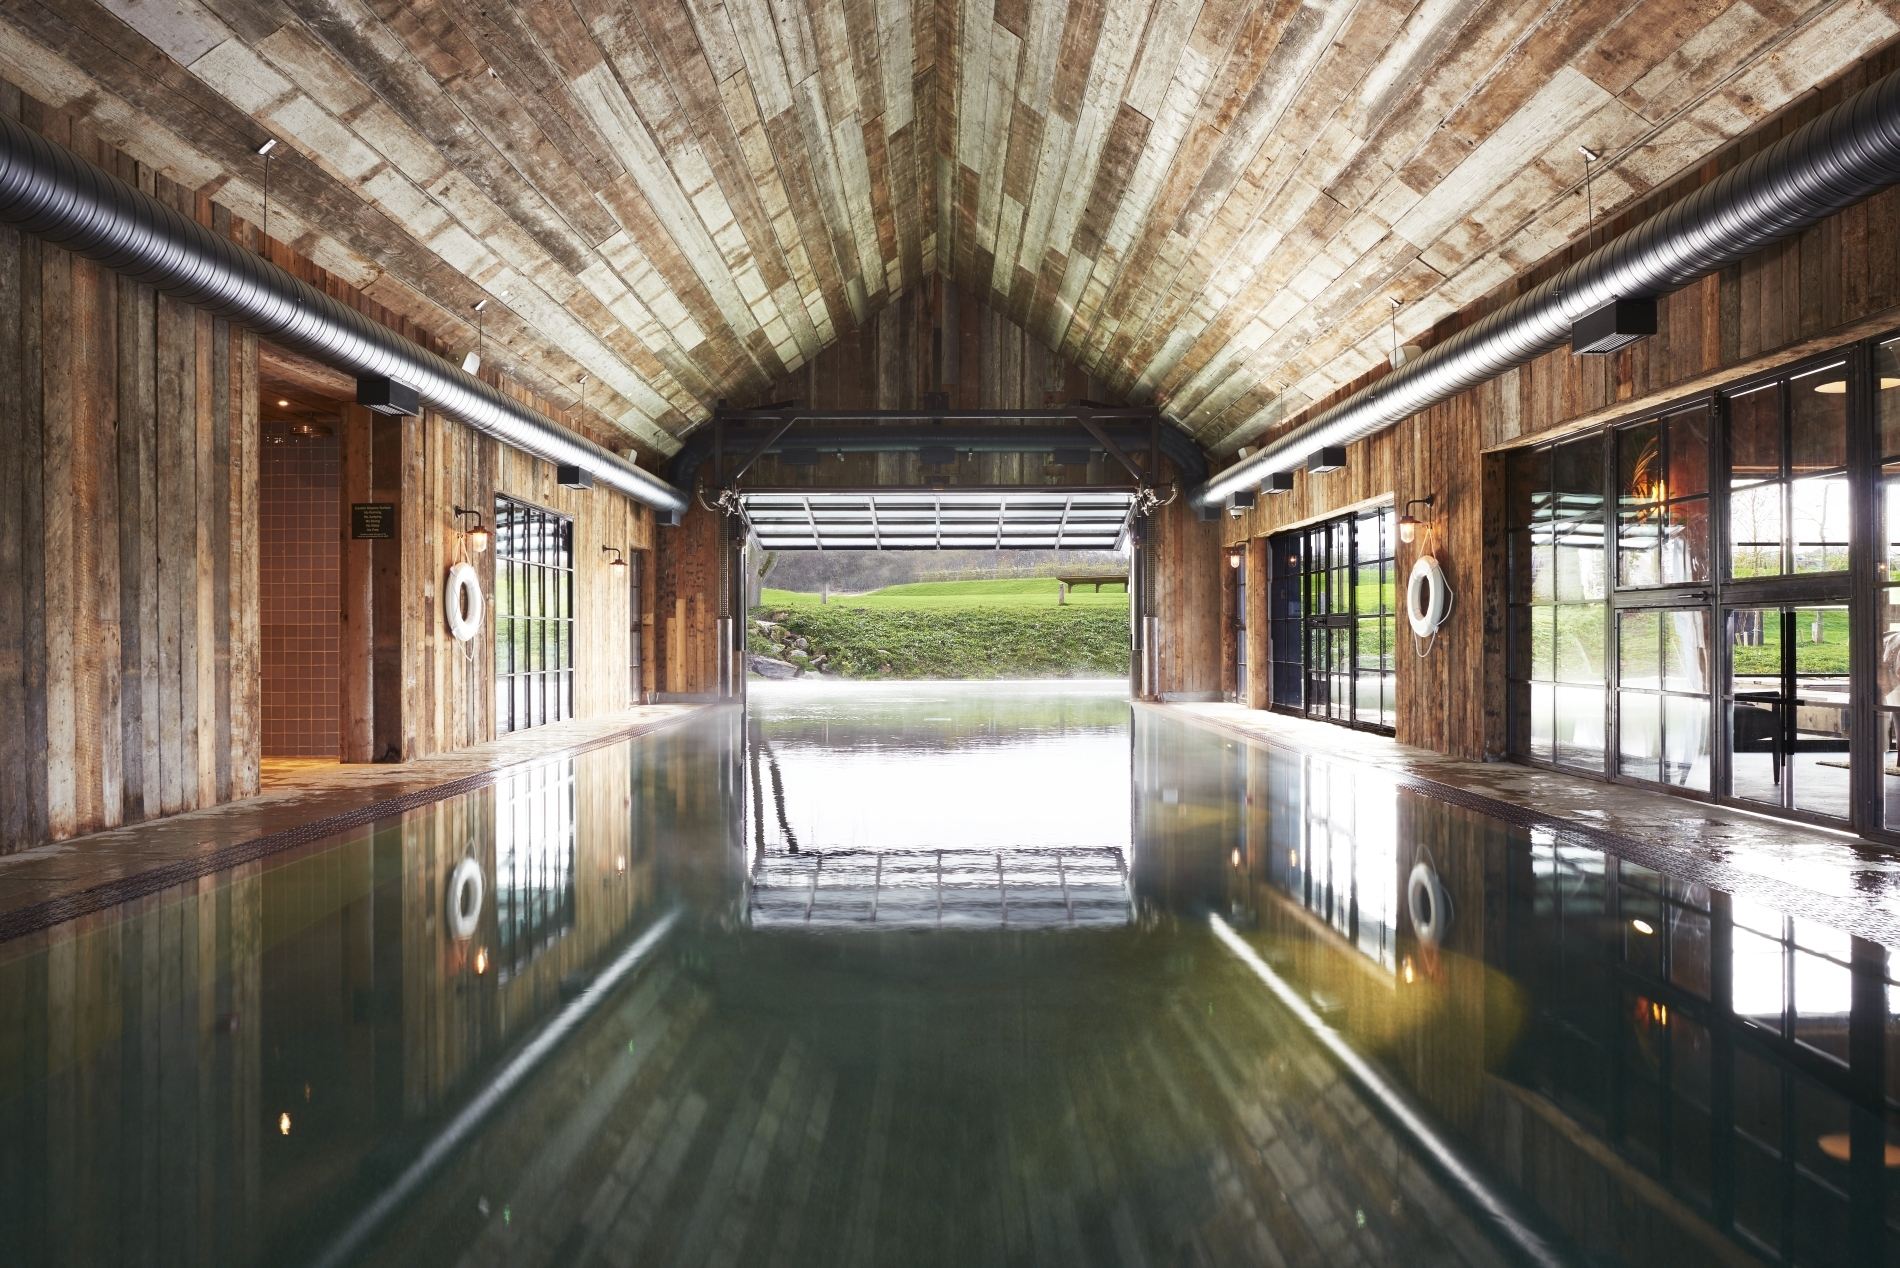 großer innen pool im bootshaus mit holzdecke und blick nach draußen im exklusiven soho farmhouse in england Oxfordshire